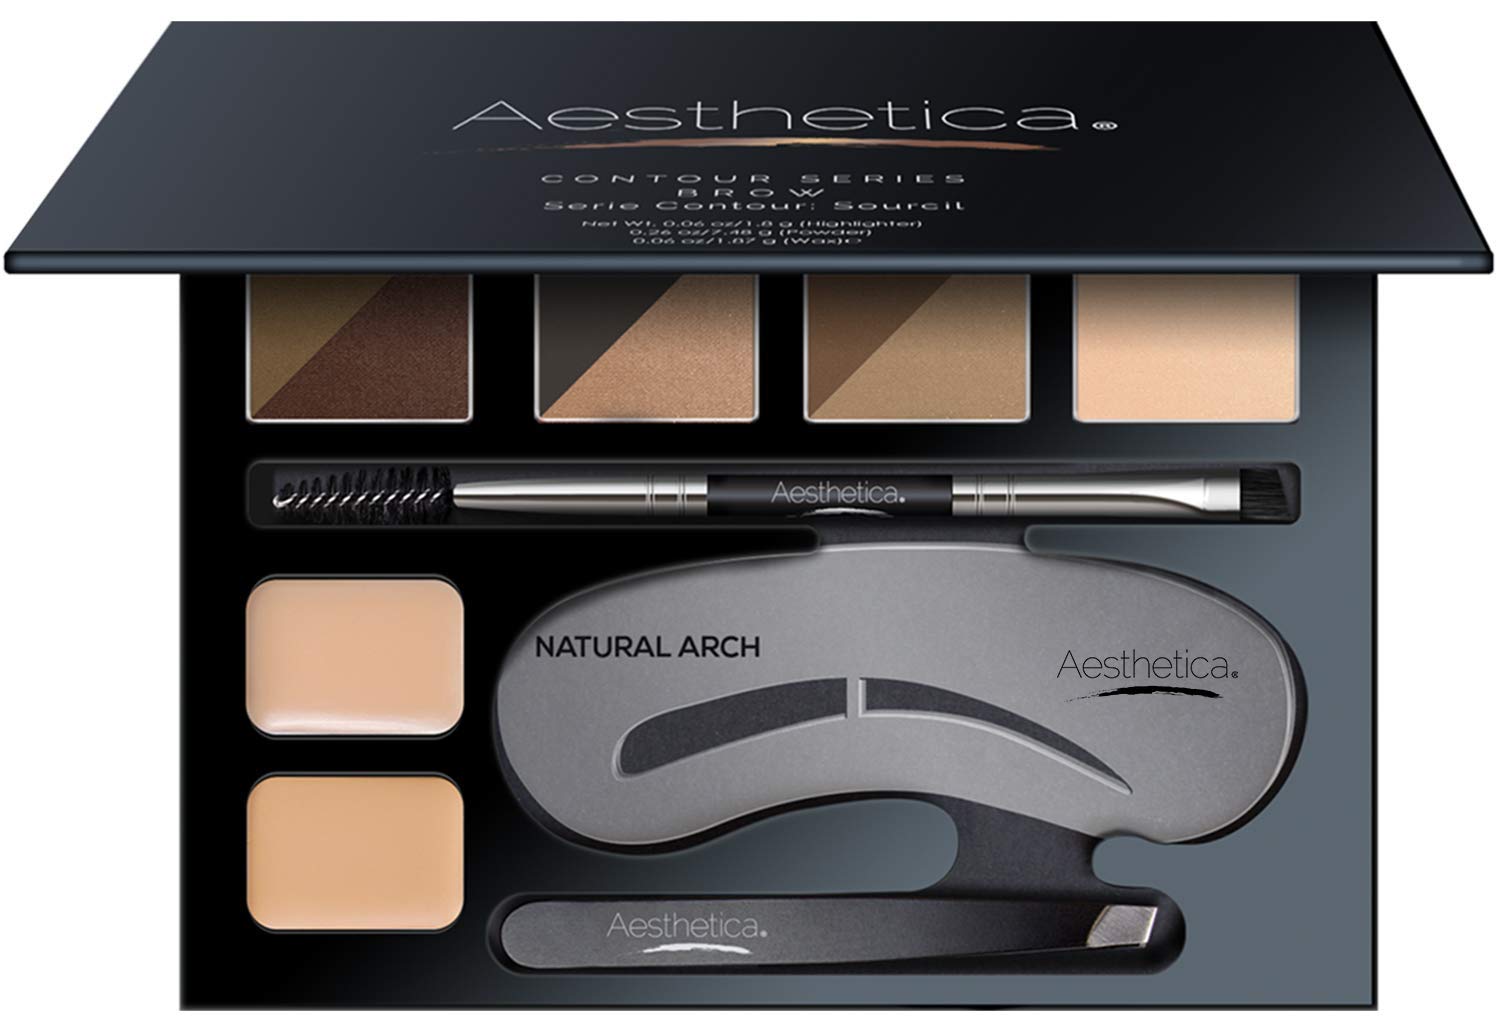 Aesthetica Brow Contour Powder Palette Makeup Kit